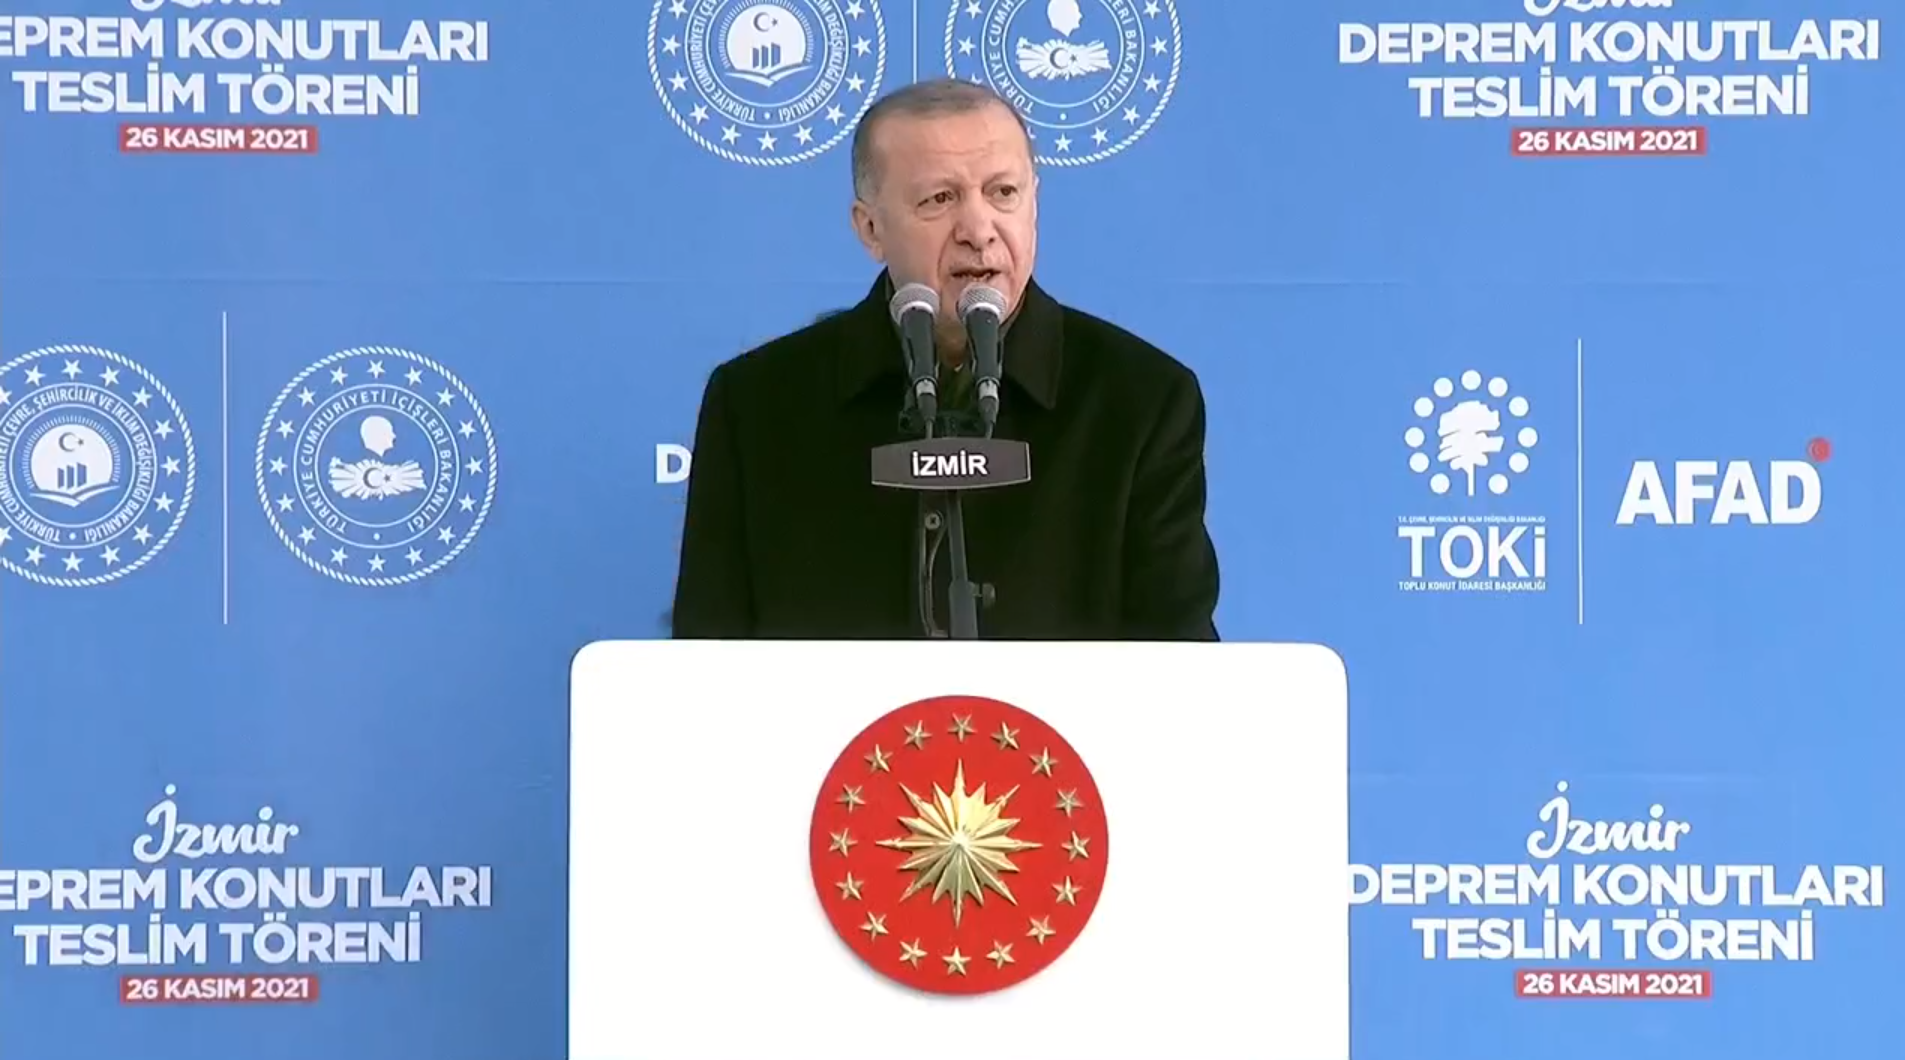 Cumhurbaşkanı Erdoğan, İzmir'de deprem konutlarının teslim töreninde konuştu: Bugüne kadar ne söz verdiysek yaptık